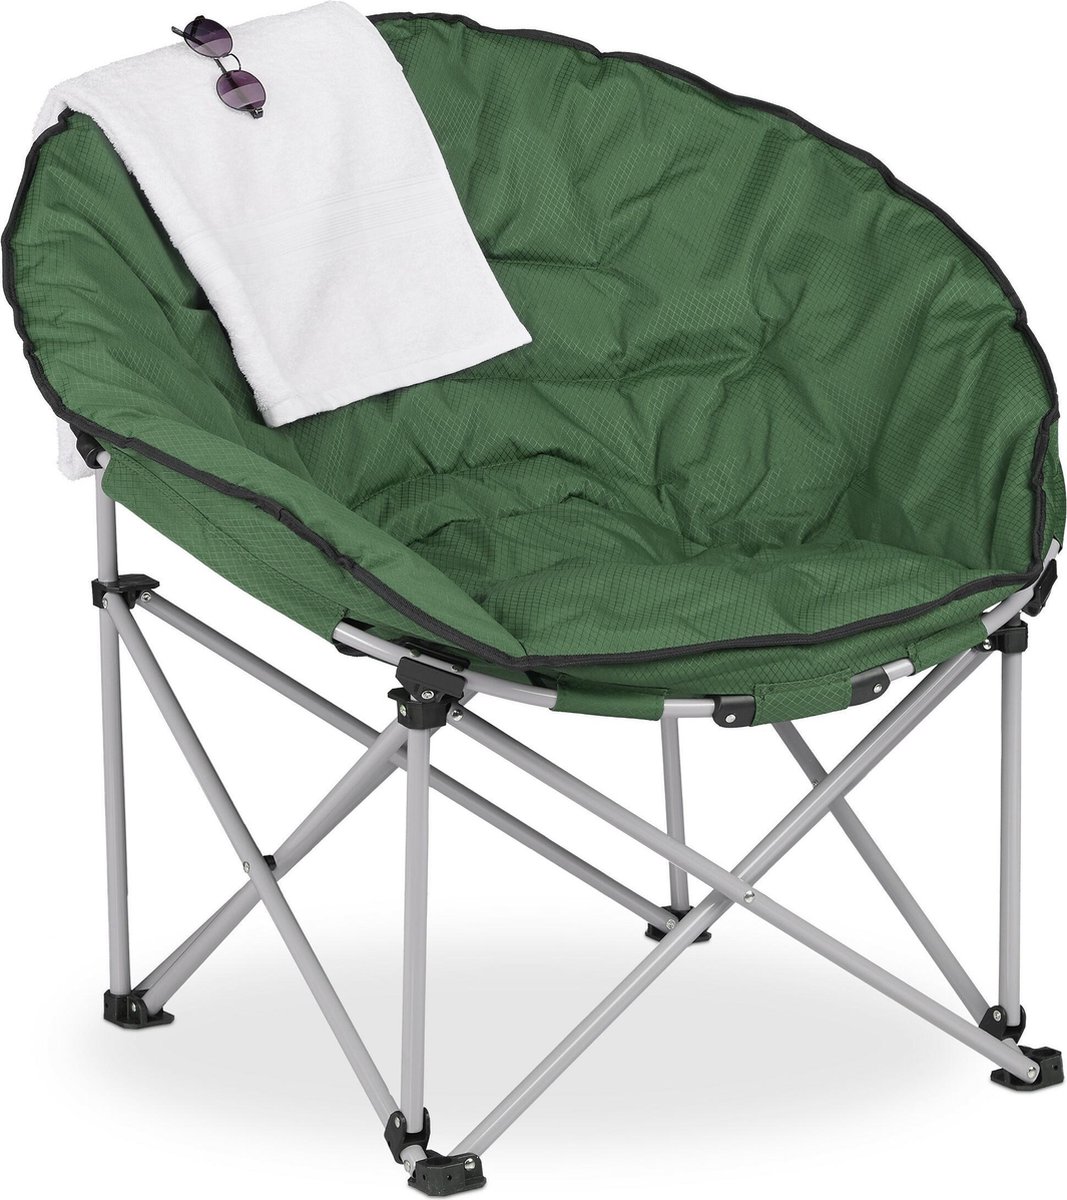 Relaxdays campingstoel opvouwbaar - moon chair - kampeerstoel - donkergroene relaxstoel